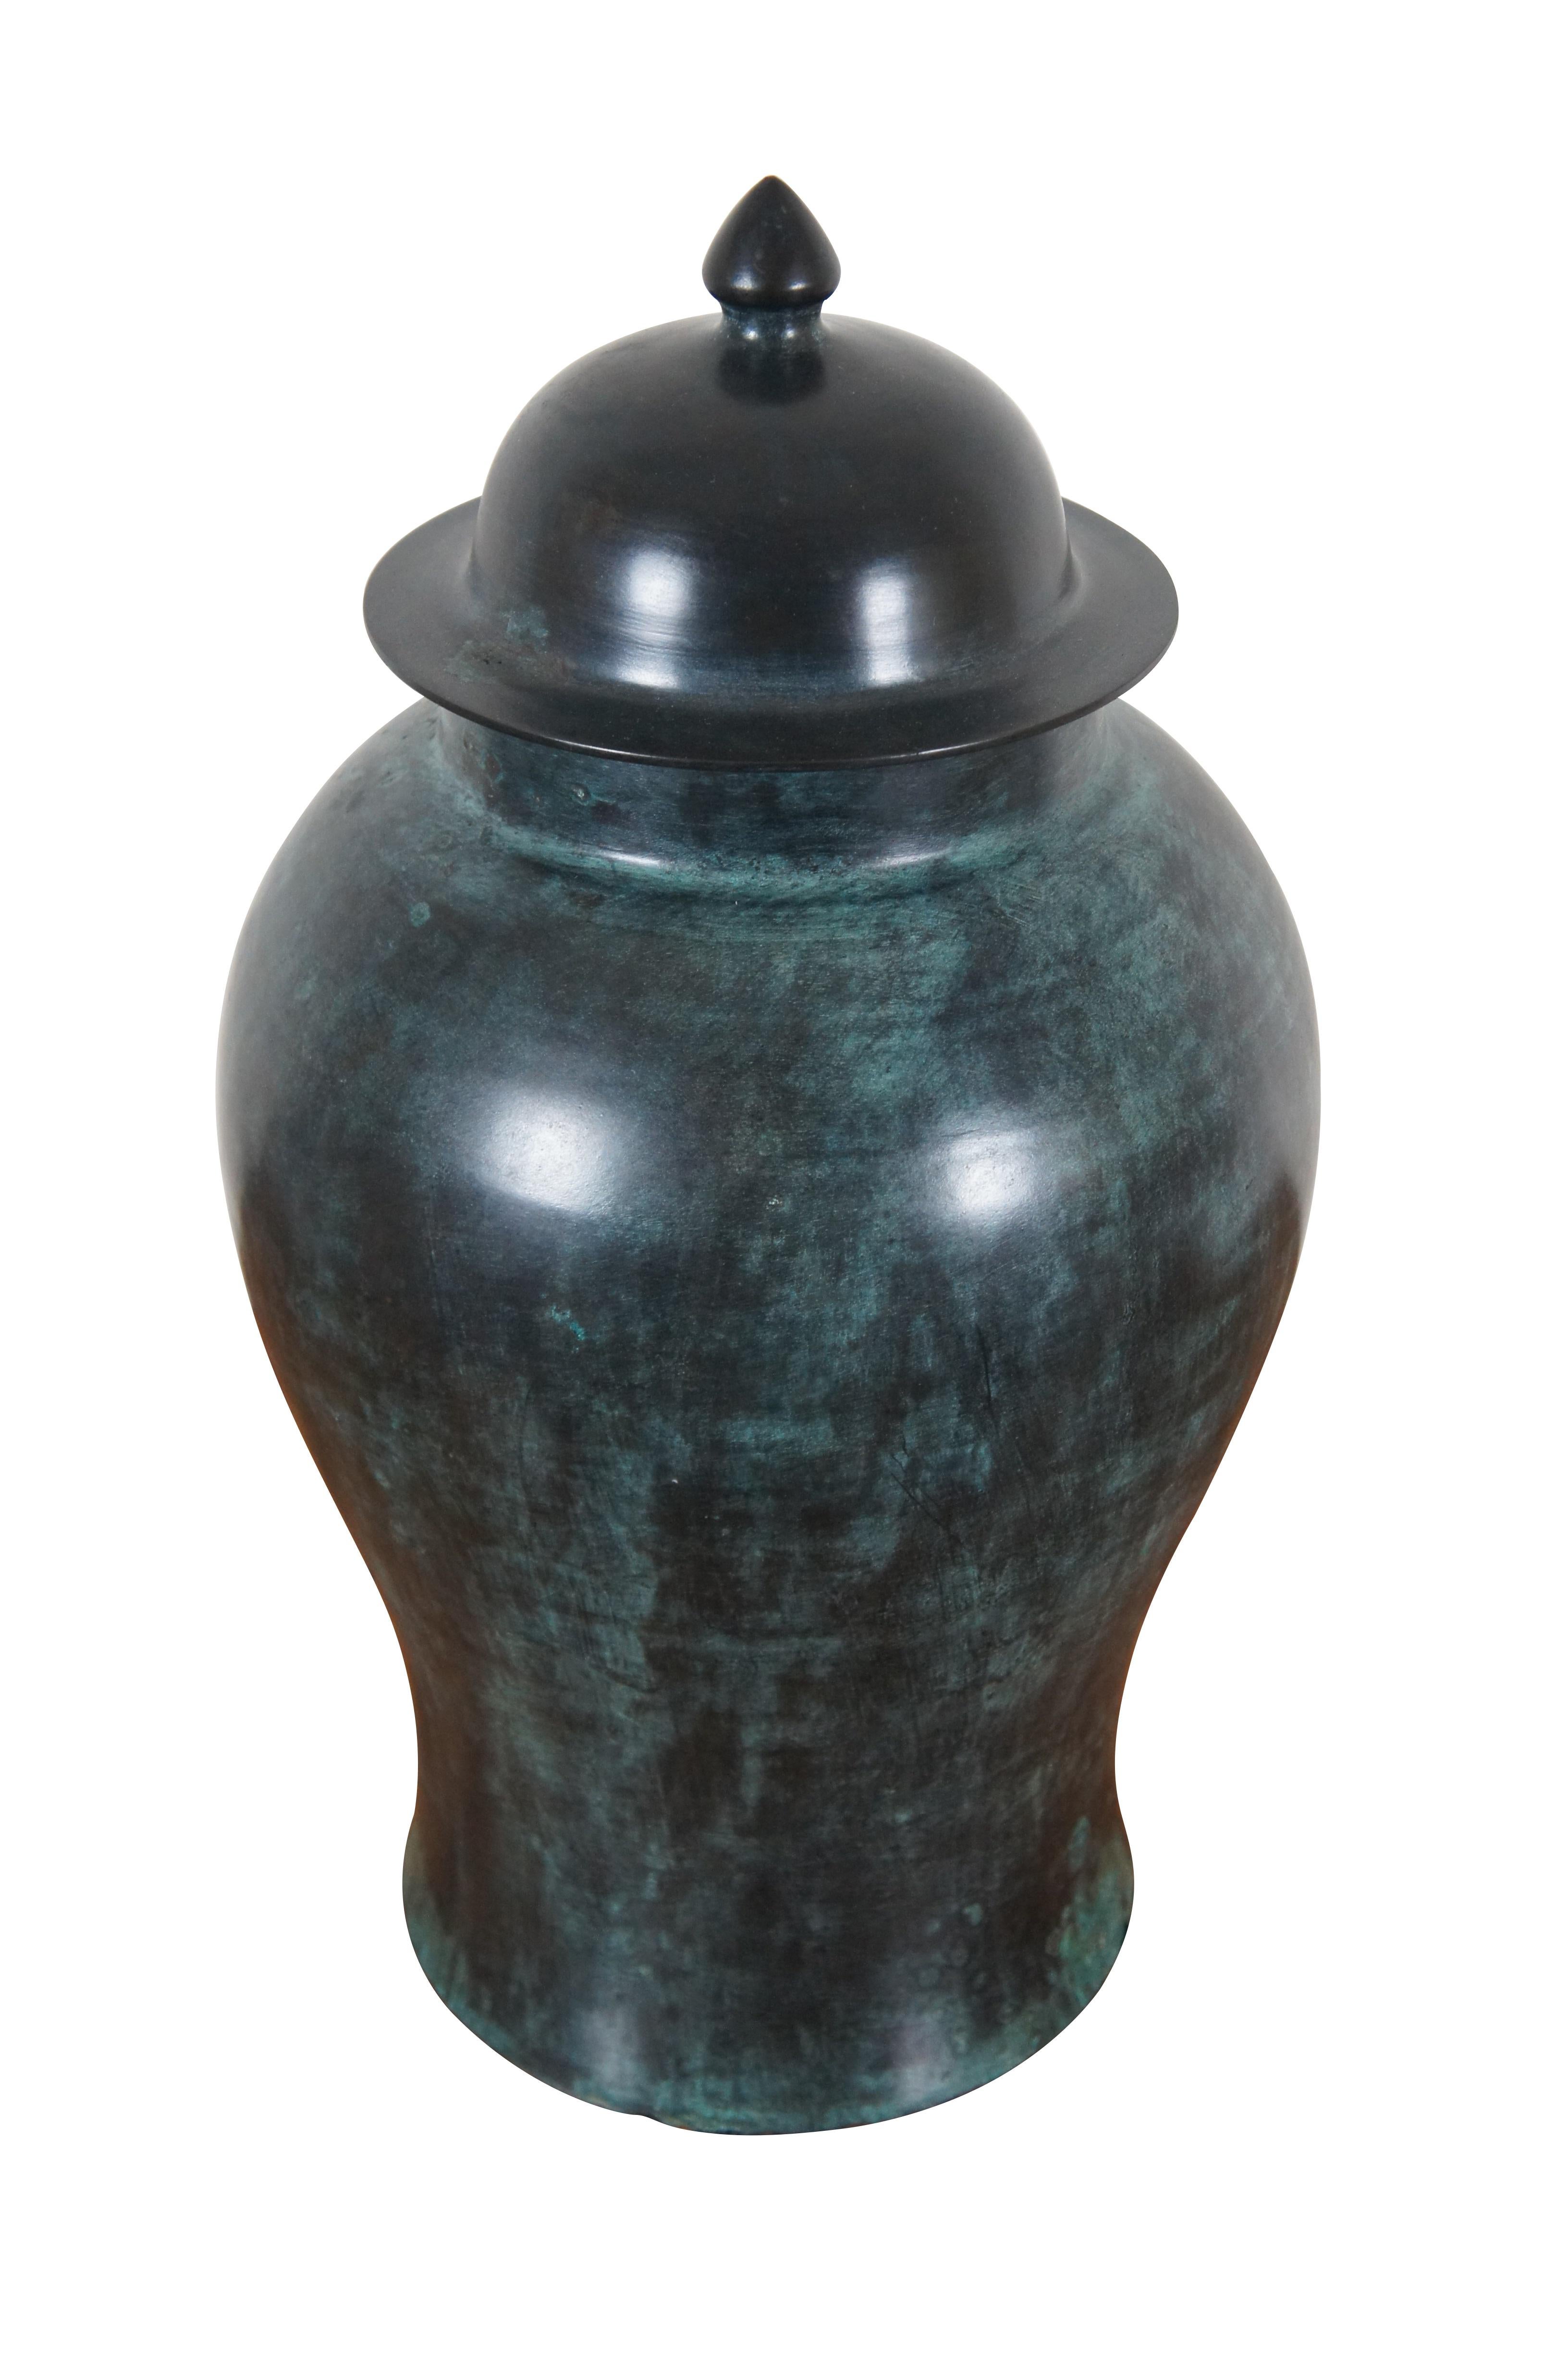 Pot à gingembre / urne / vase vintage à couvercle en bronze lourd, produit par Maitland Smith.  Conçu et fabriqué à la main en Thaïlande. 458 XP.

Dimensions :
11